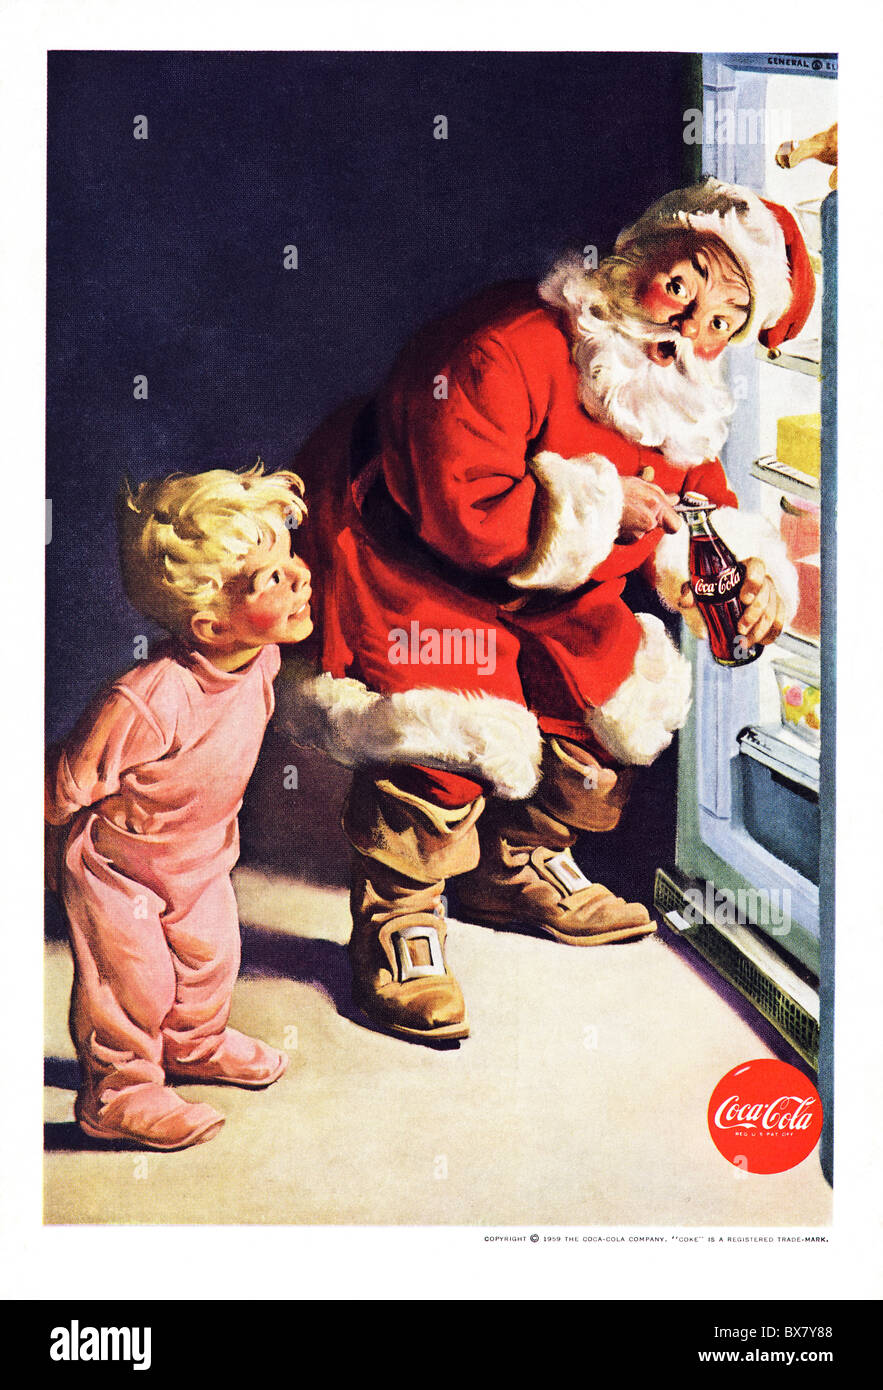 Coca Cola classique annonce dans le magazine américain avec illustration couleur de Santa le Père Noël daté de décembre 1959 Banque D'Images